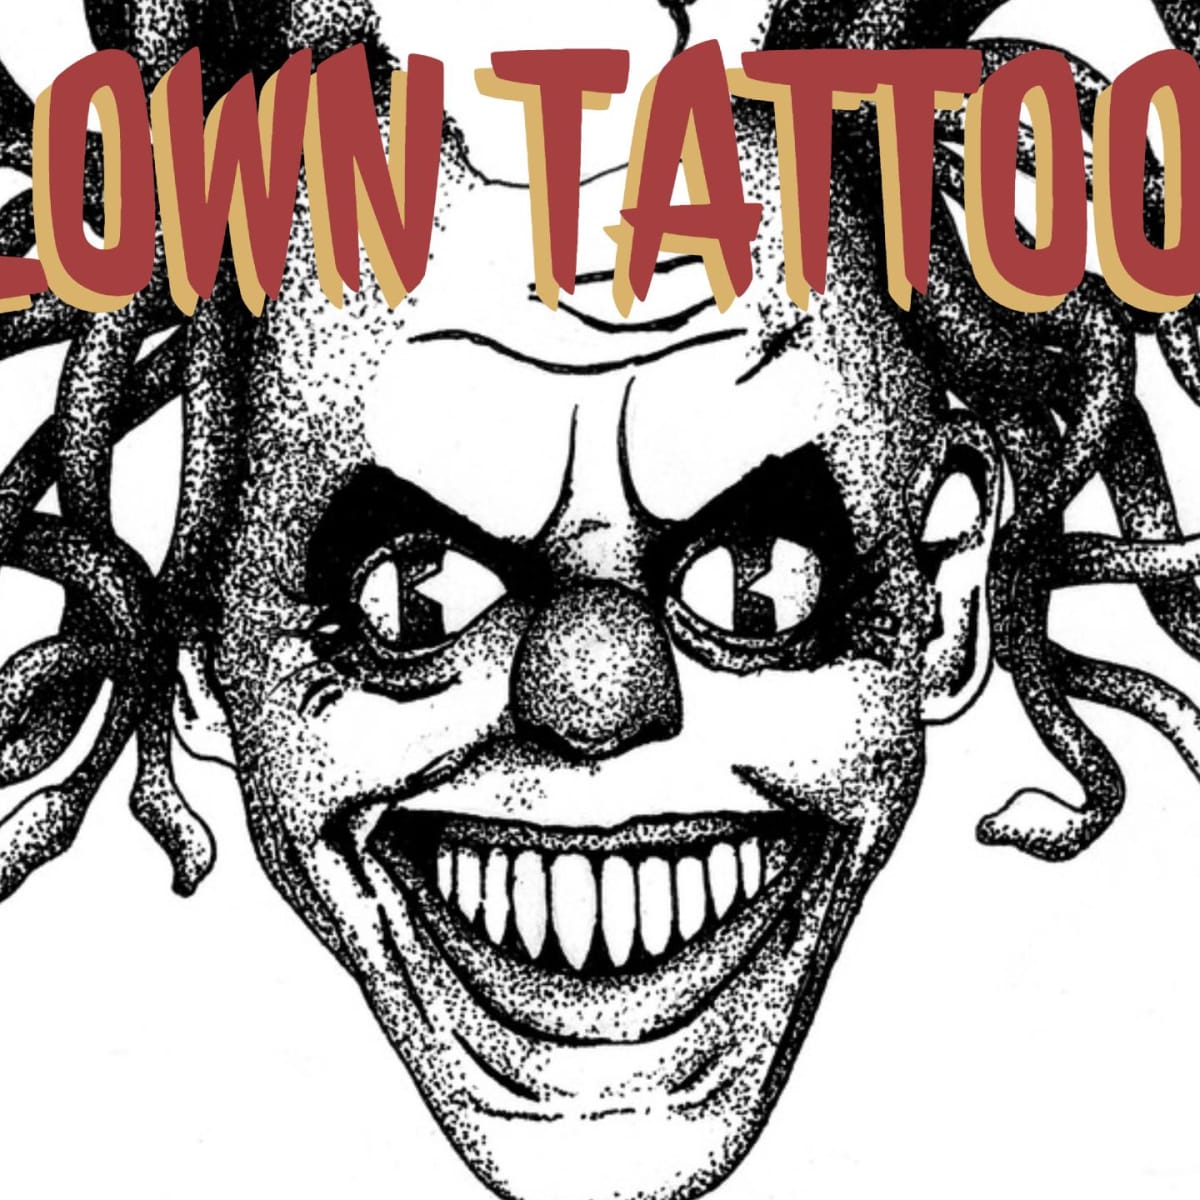 New Waterproof Temporary Tattoo Sticker American Flag With Skull Joker Clown  Pattern Tattoo Water Transfer Body Art Fake TattooTemporary Tattoos  AliExpress  Waterproof Temporary Tattoo Sticker Skull Joker Clown Pattern  Tattoo Water